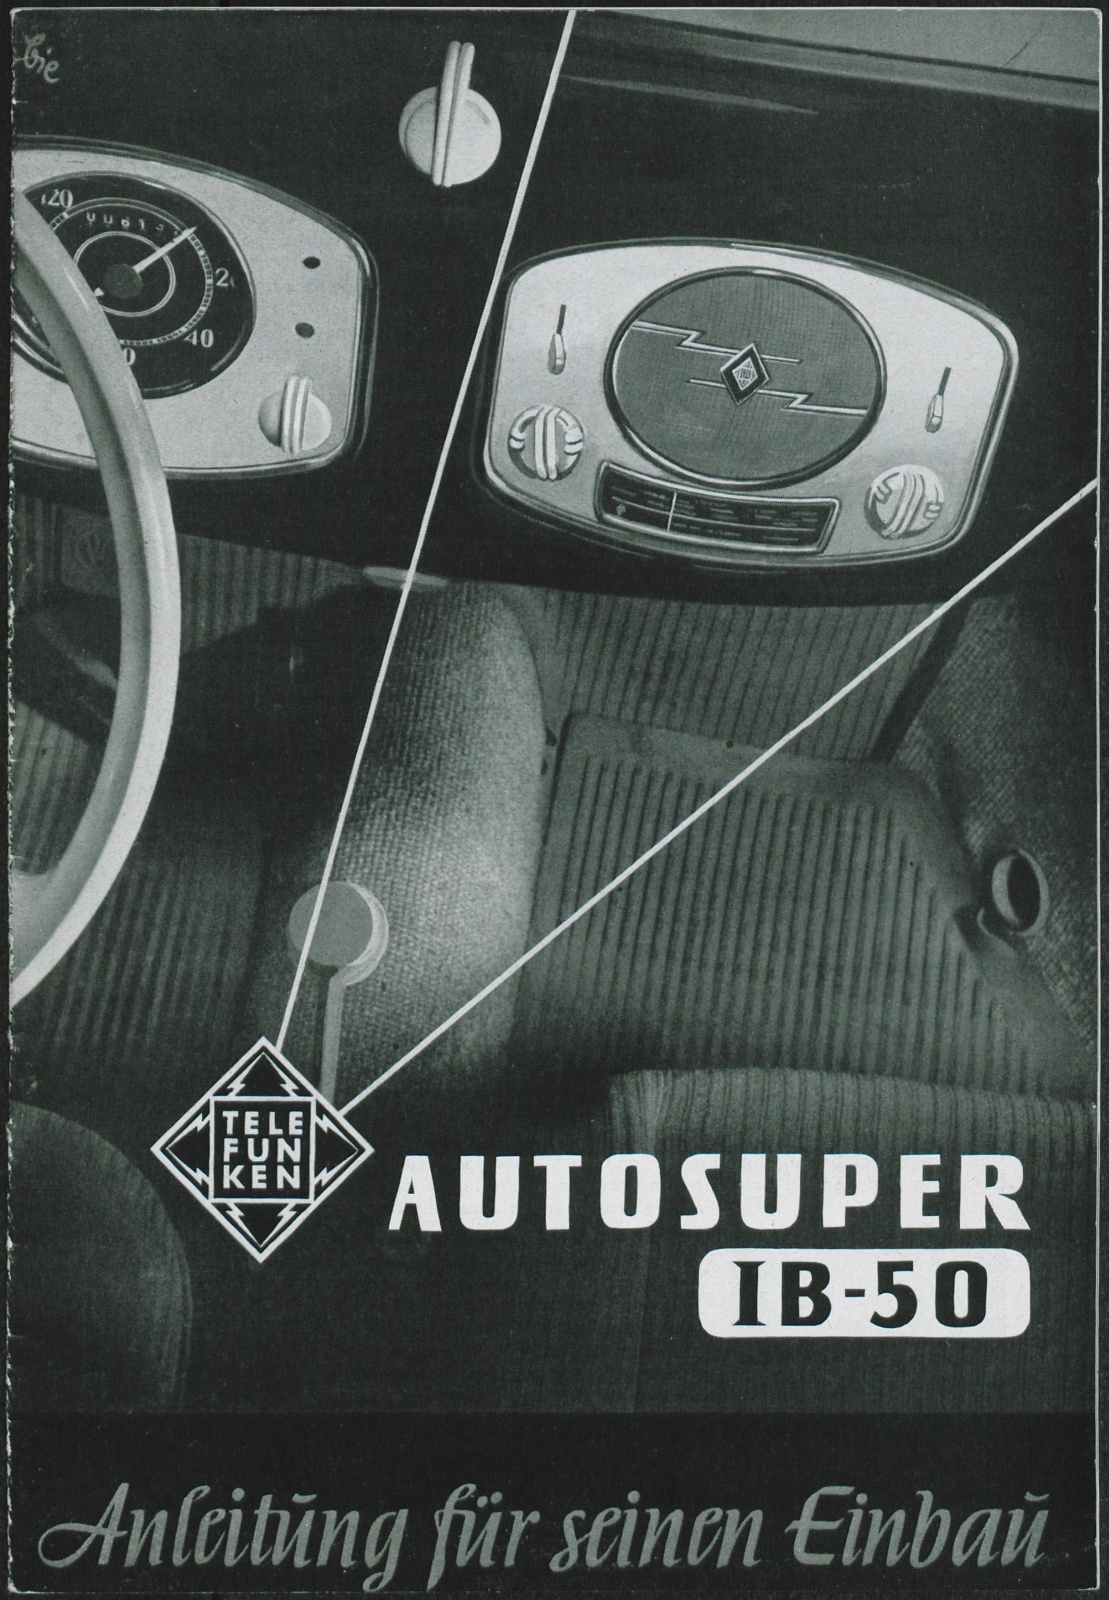 Bedienungsanleitung: Autosuper IB 50; Anleitung für seinen Einbau (Stiftung Deutsches Technikmuseum Berlin CC0)